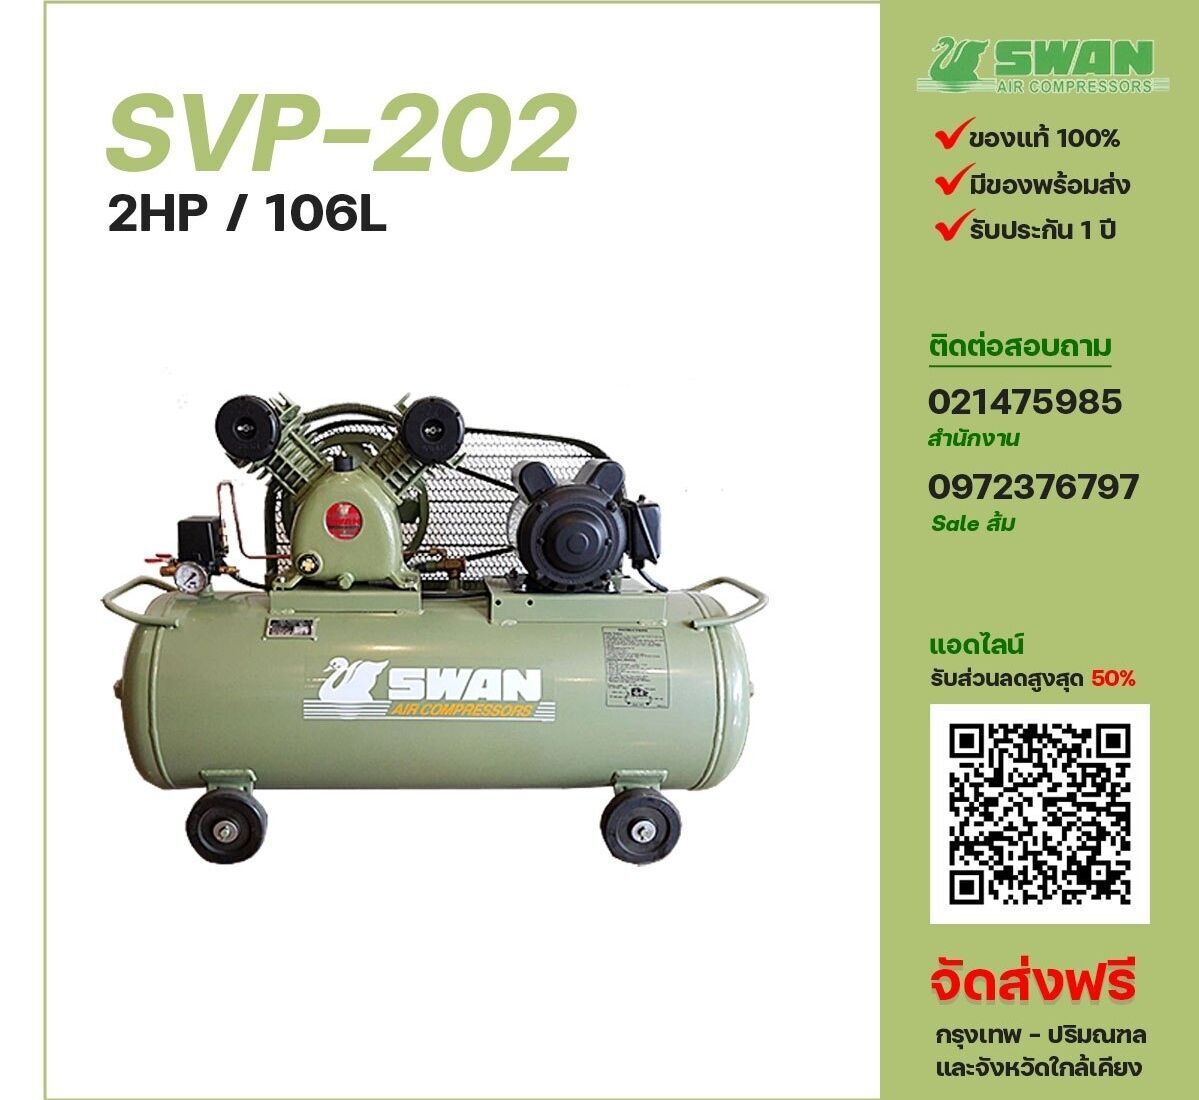 ปั๊มลมสวอน SWAN SVP-202 220V/380V ปั๊มลมลูกสูบ ขนาด 2 สูบ 2 แรงม้า 106 ลิตร SWAN พร้อมมอเตอร์ ไฟ 220V/380V ส่งฟรี กรุงเทพฯ-ปริมณฑล รับประกัน 1 ปี